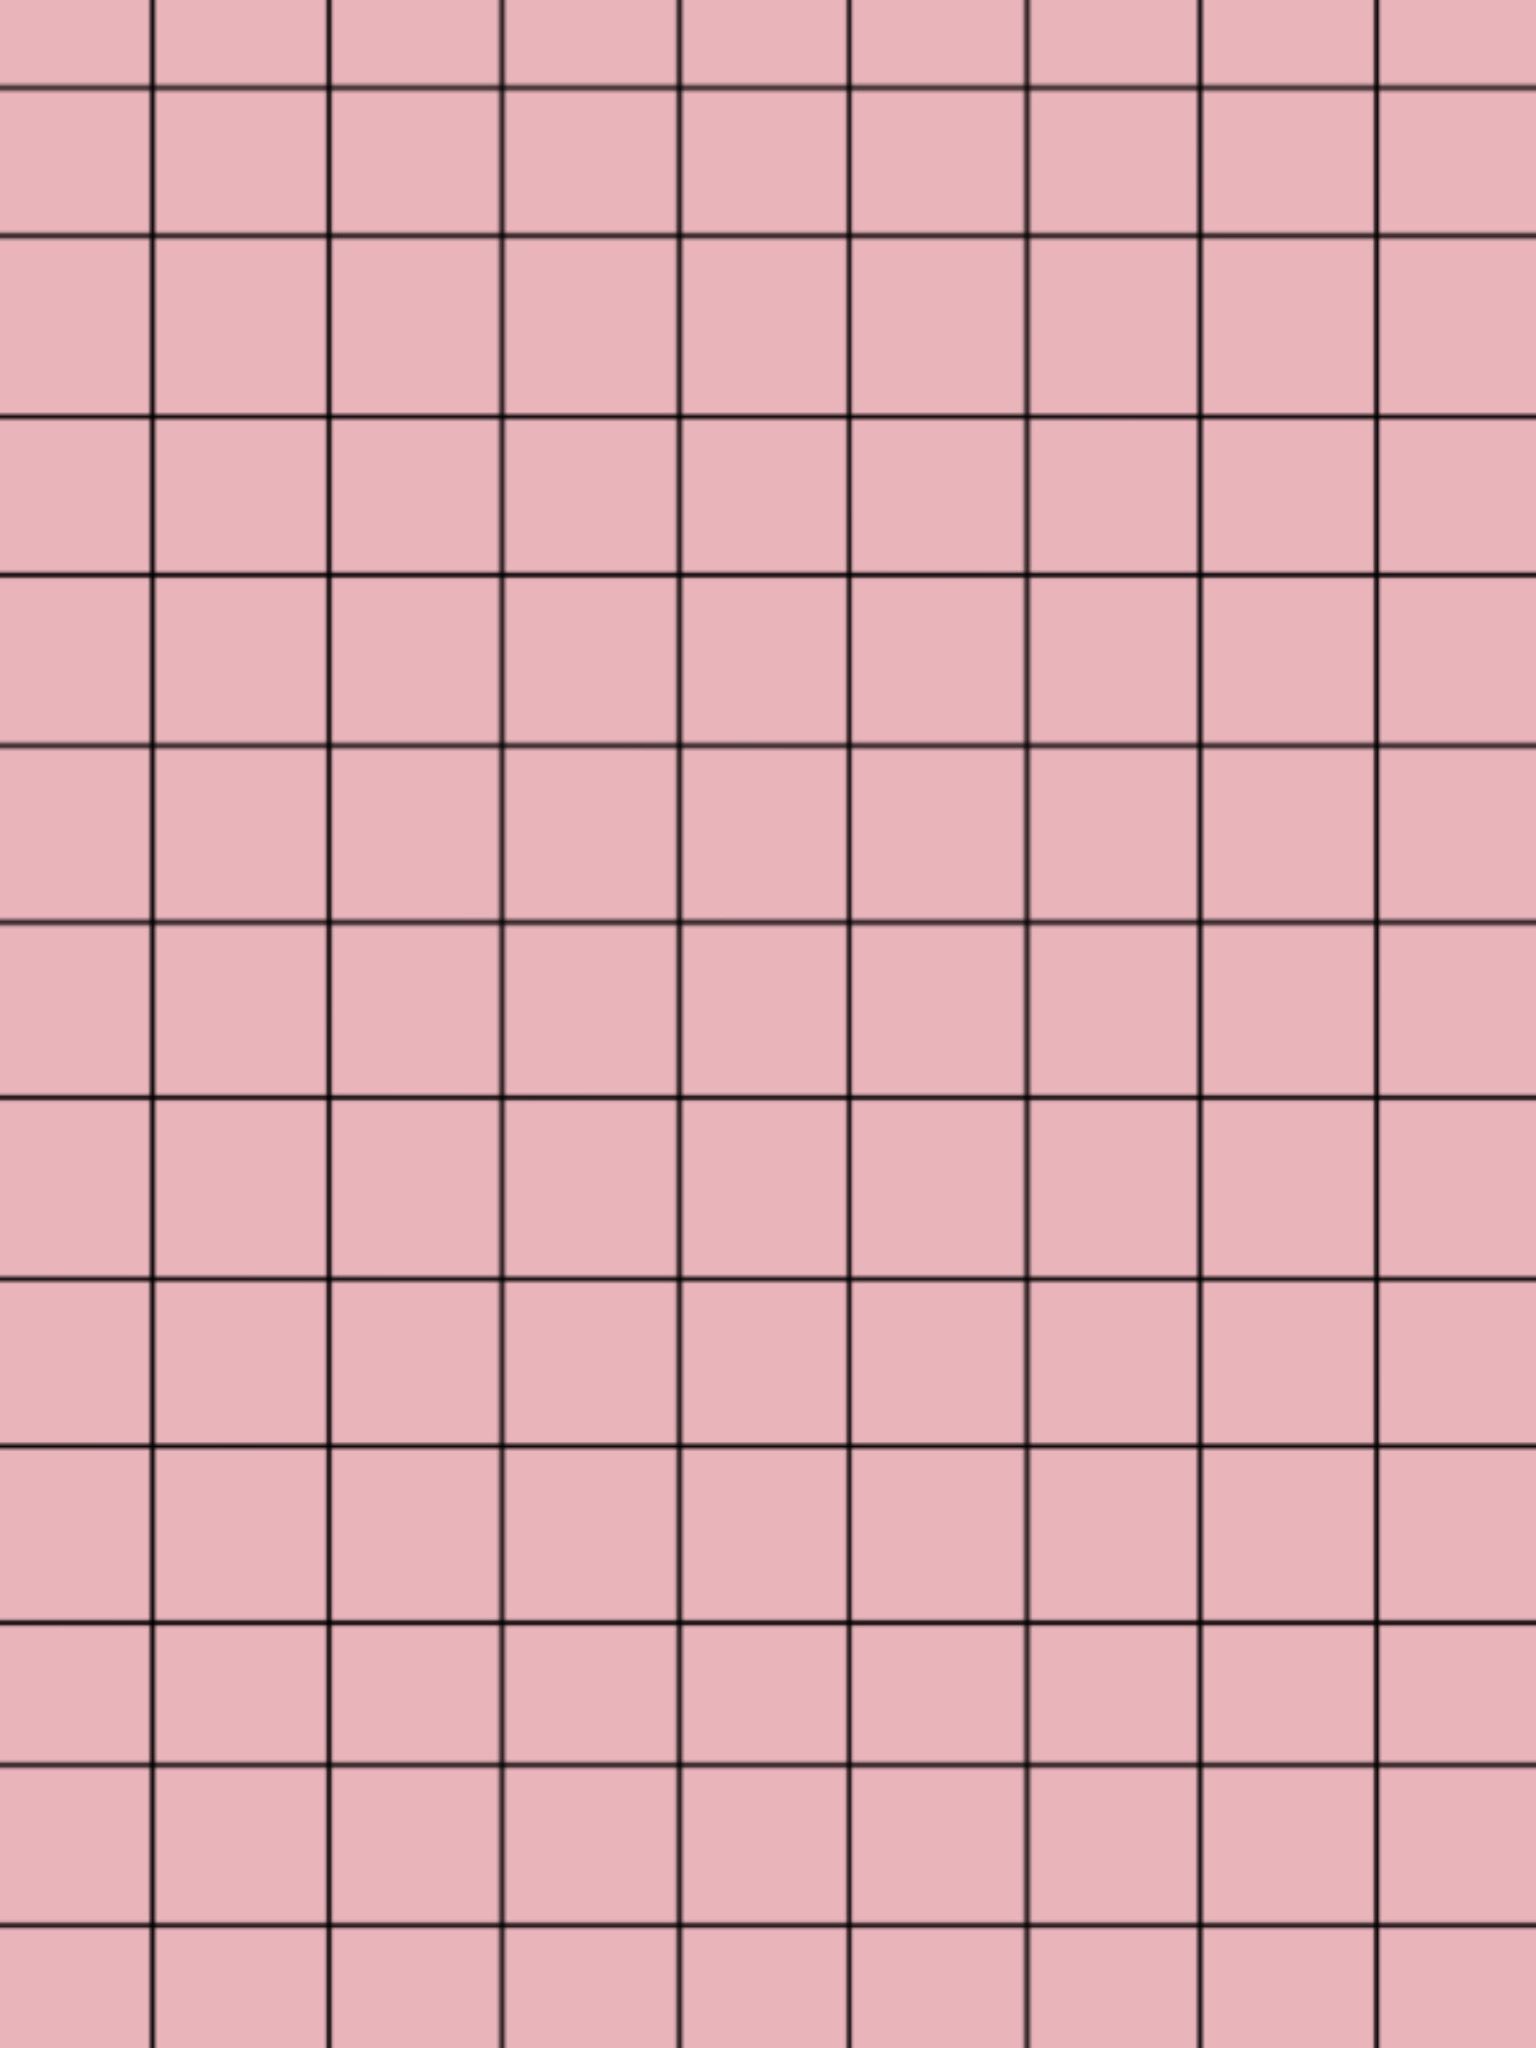 Risultato Della Ricerca Immagini Di Google Per Originals 09 C0 D6 09c0d. Pink Wallpaper Background, Grid Wallpaper, Pink And Black Wallpaper